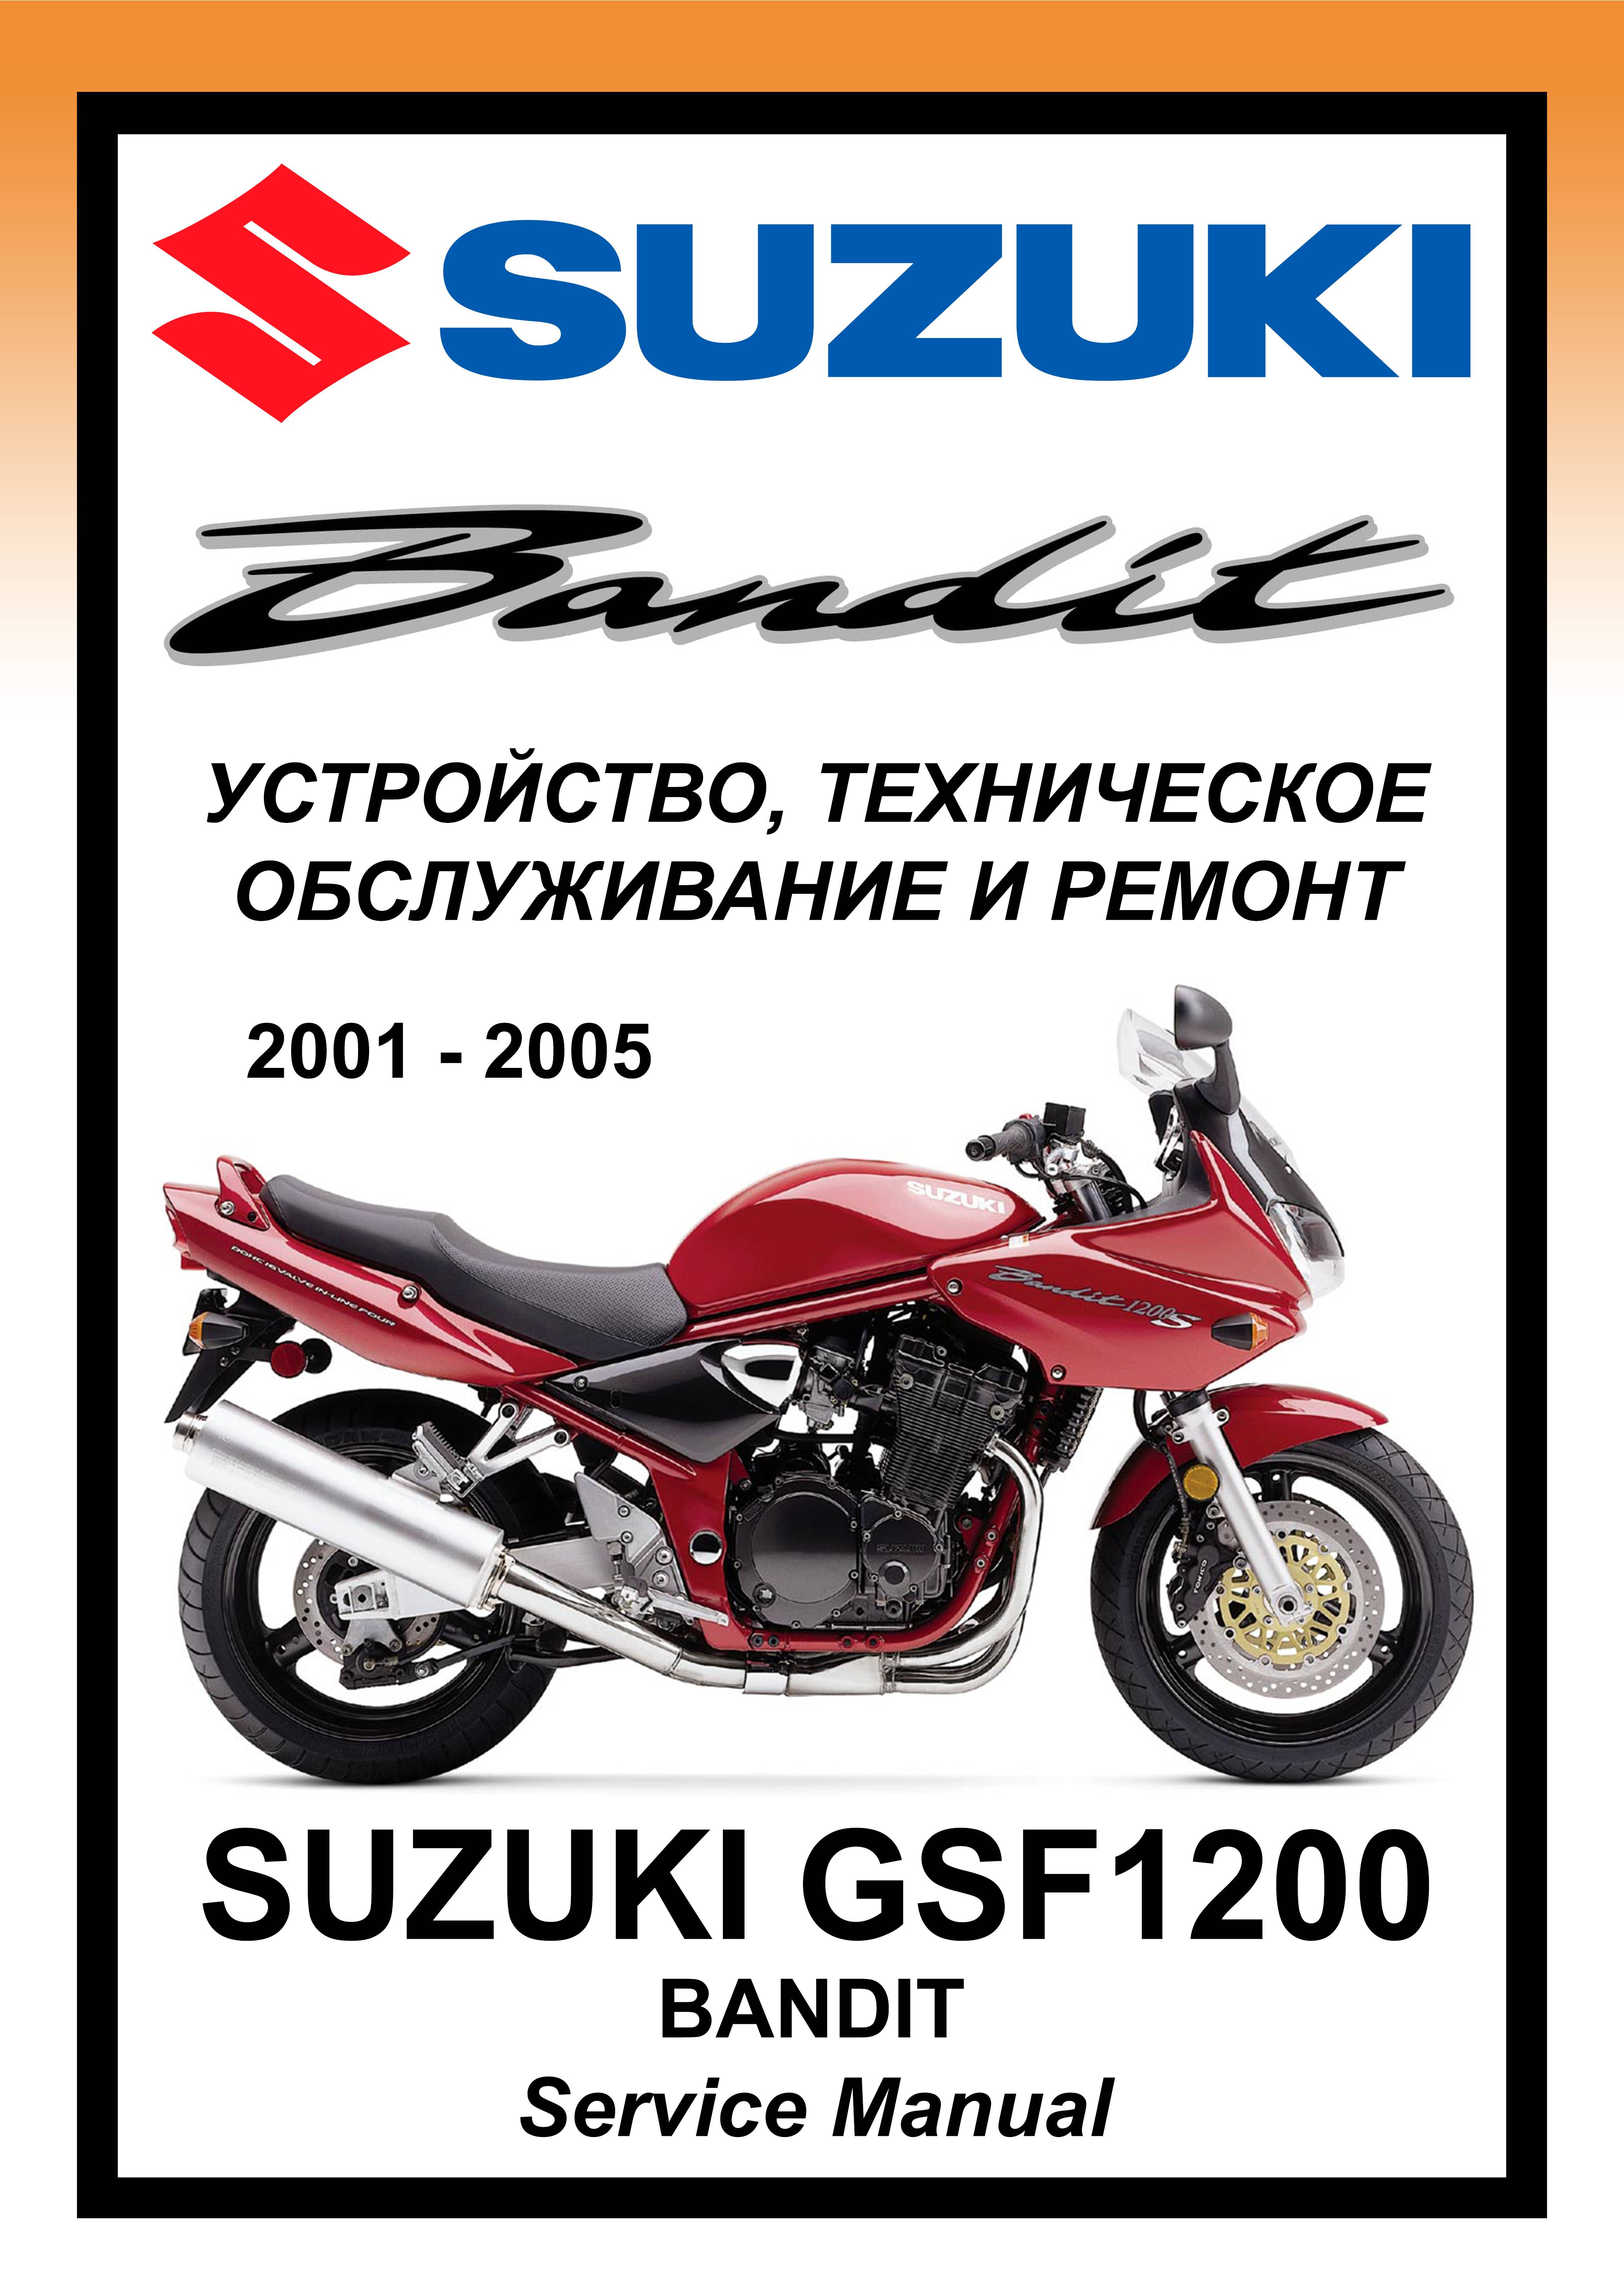 Suzuki rf400-900